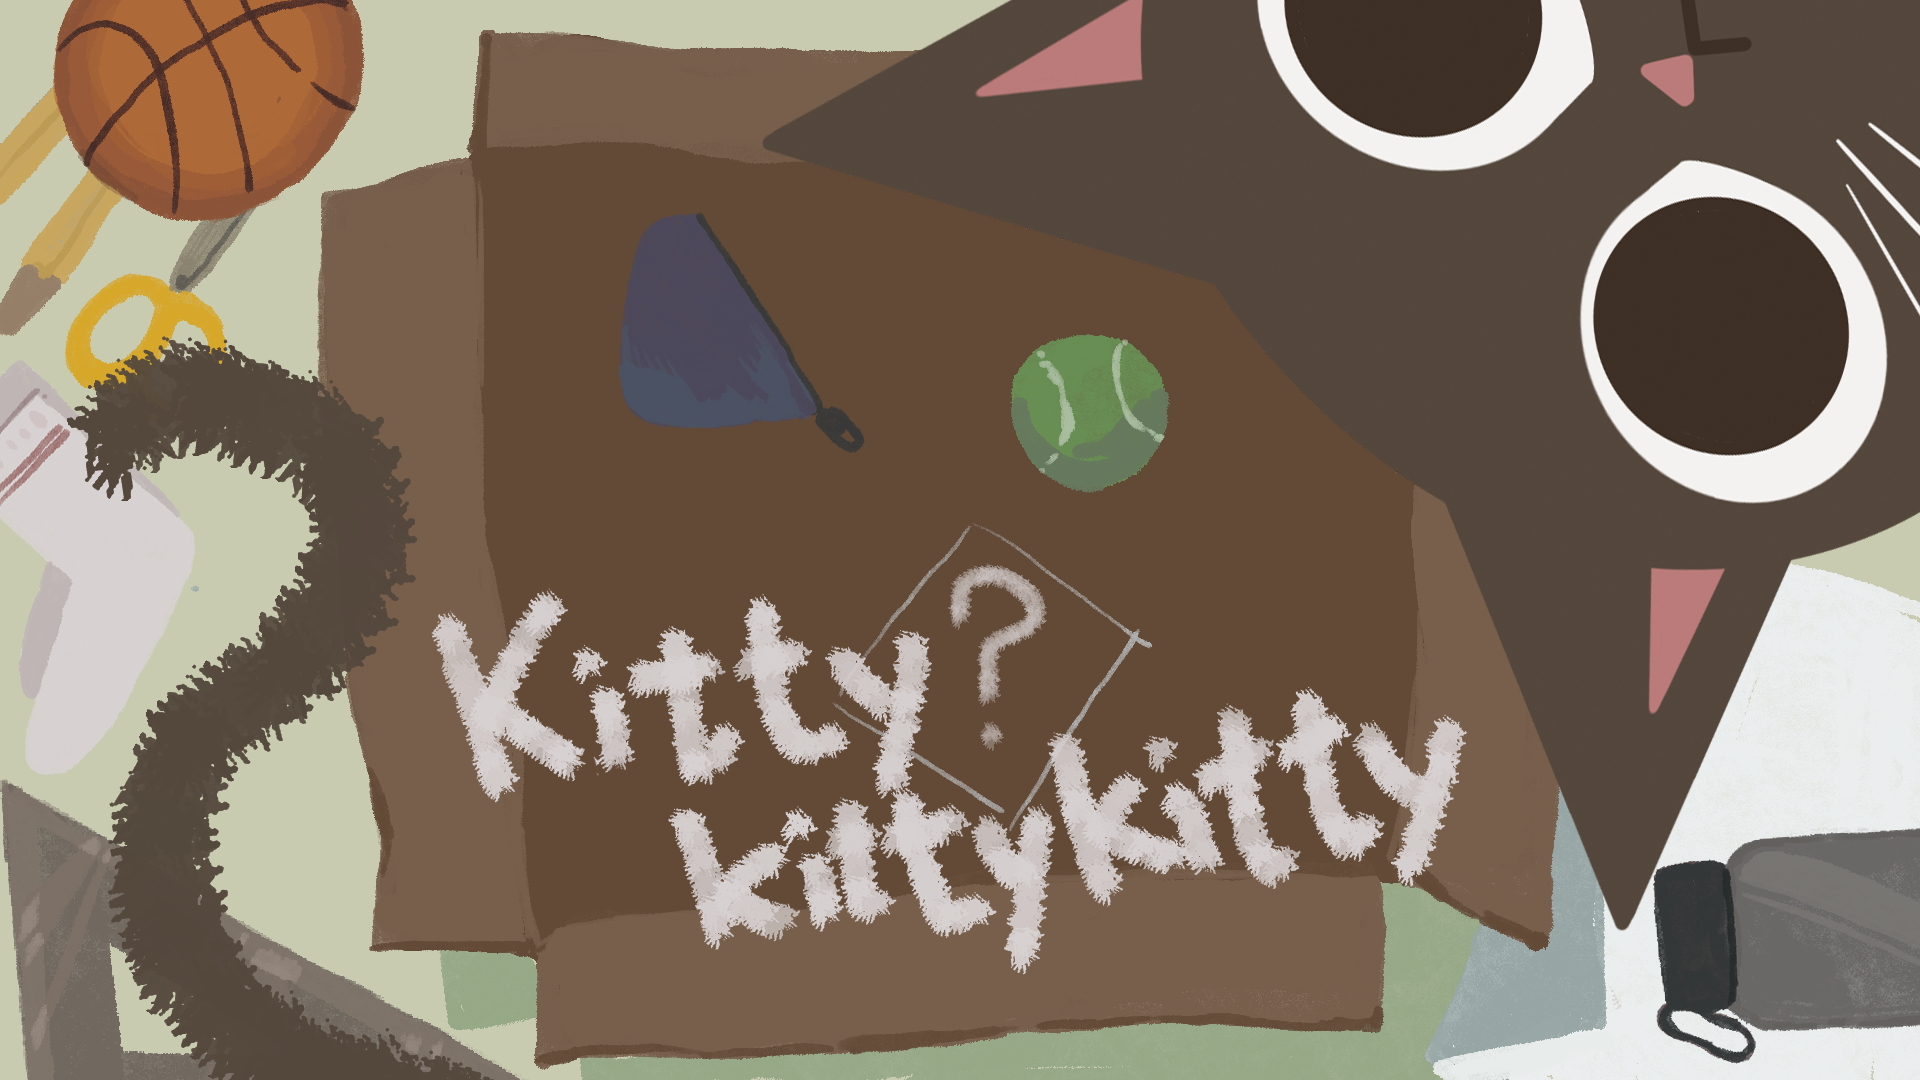 KittyKittyKitty